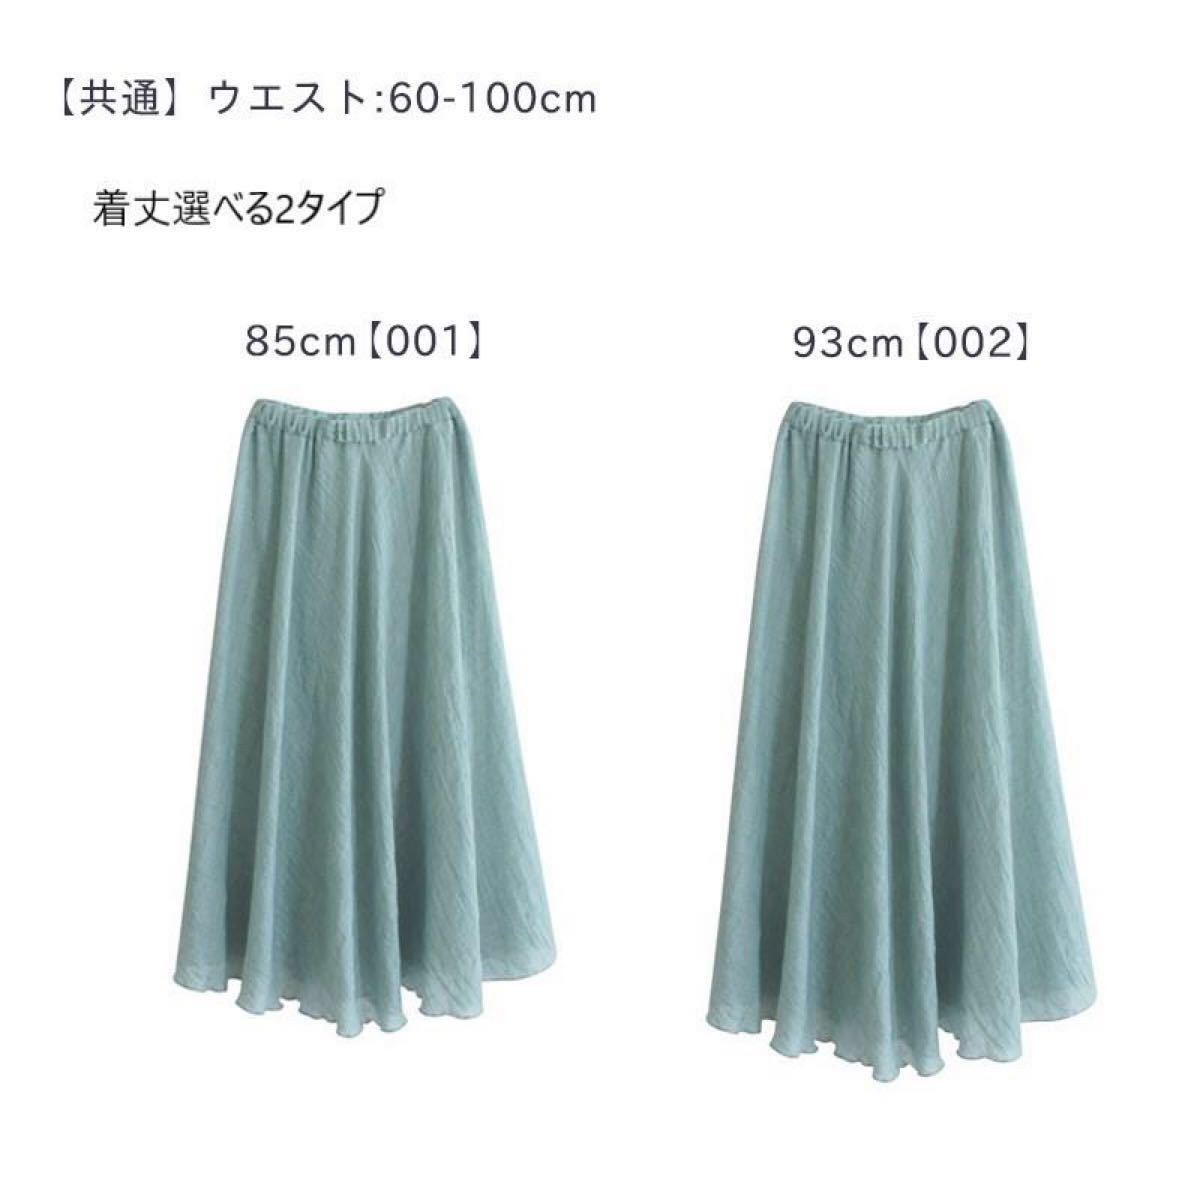 スカート マキシ丈スカート 綿麻 ライトグリーン L サイズ